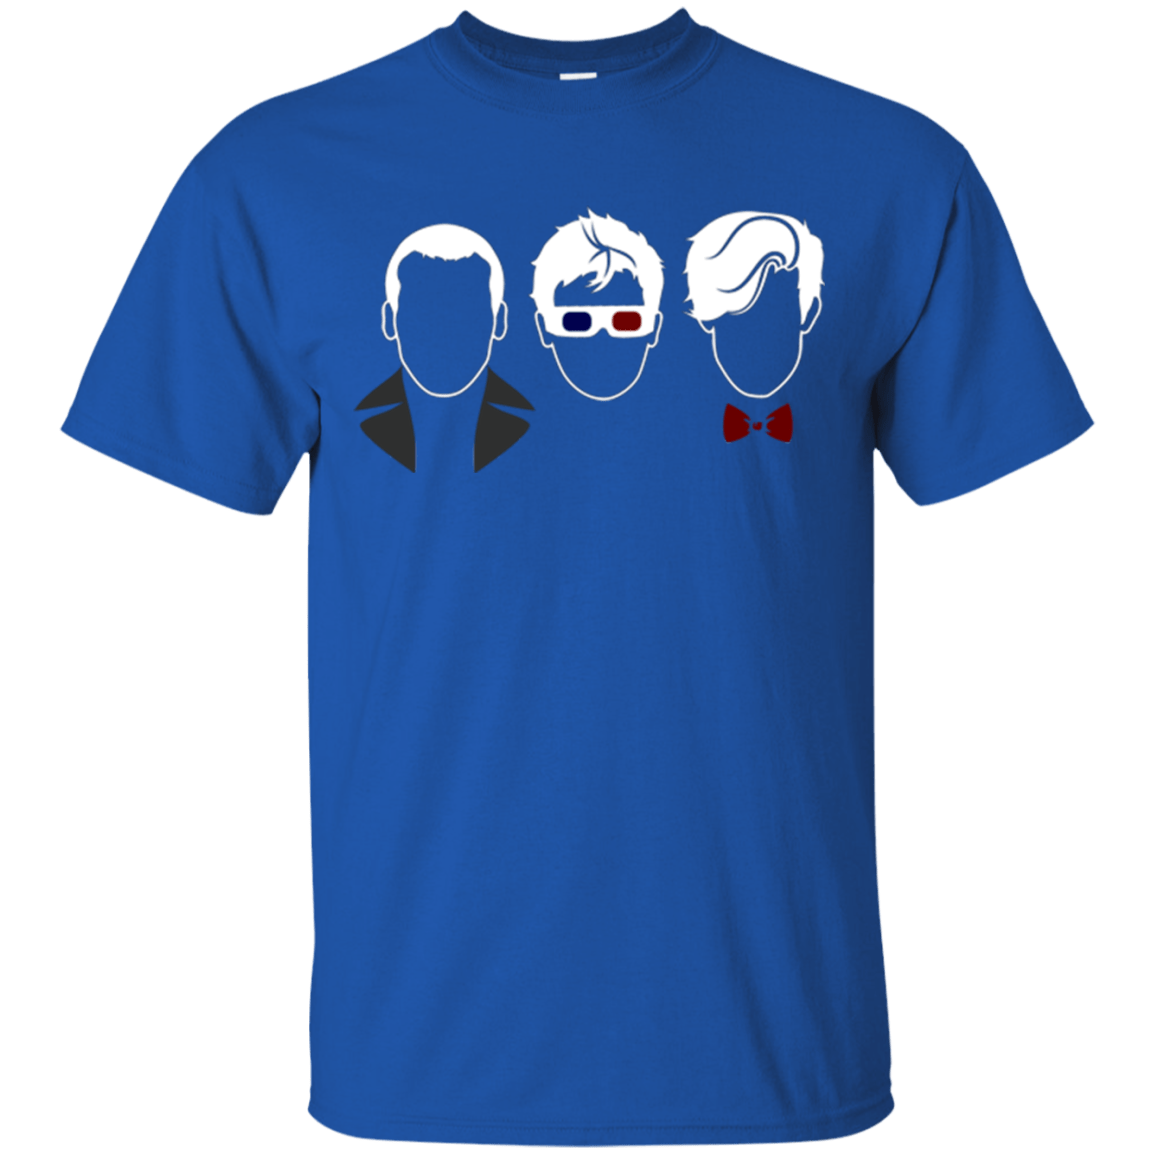 T-Shirts Royal / Small Doctors3 T-Shirt